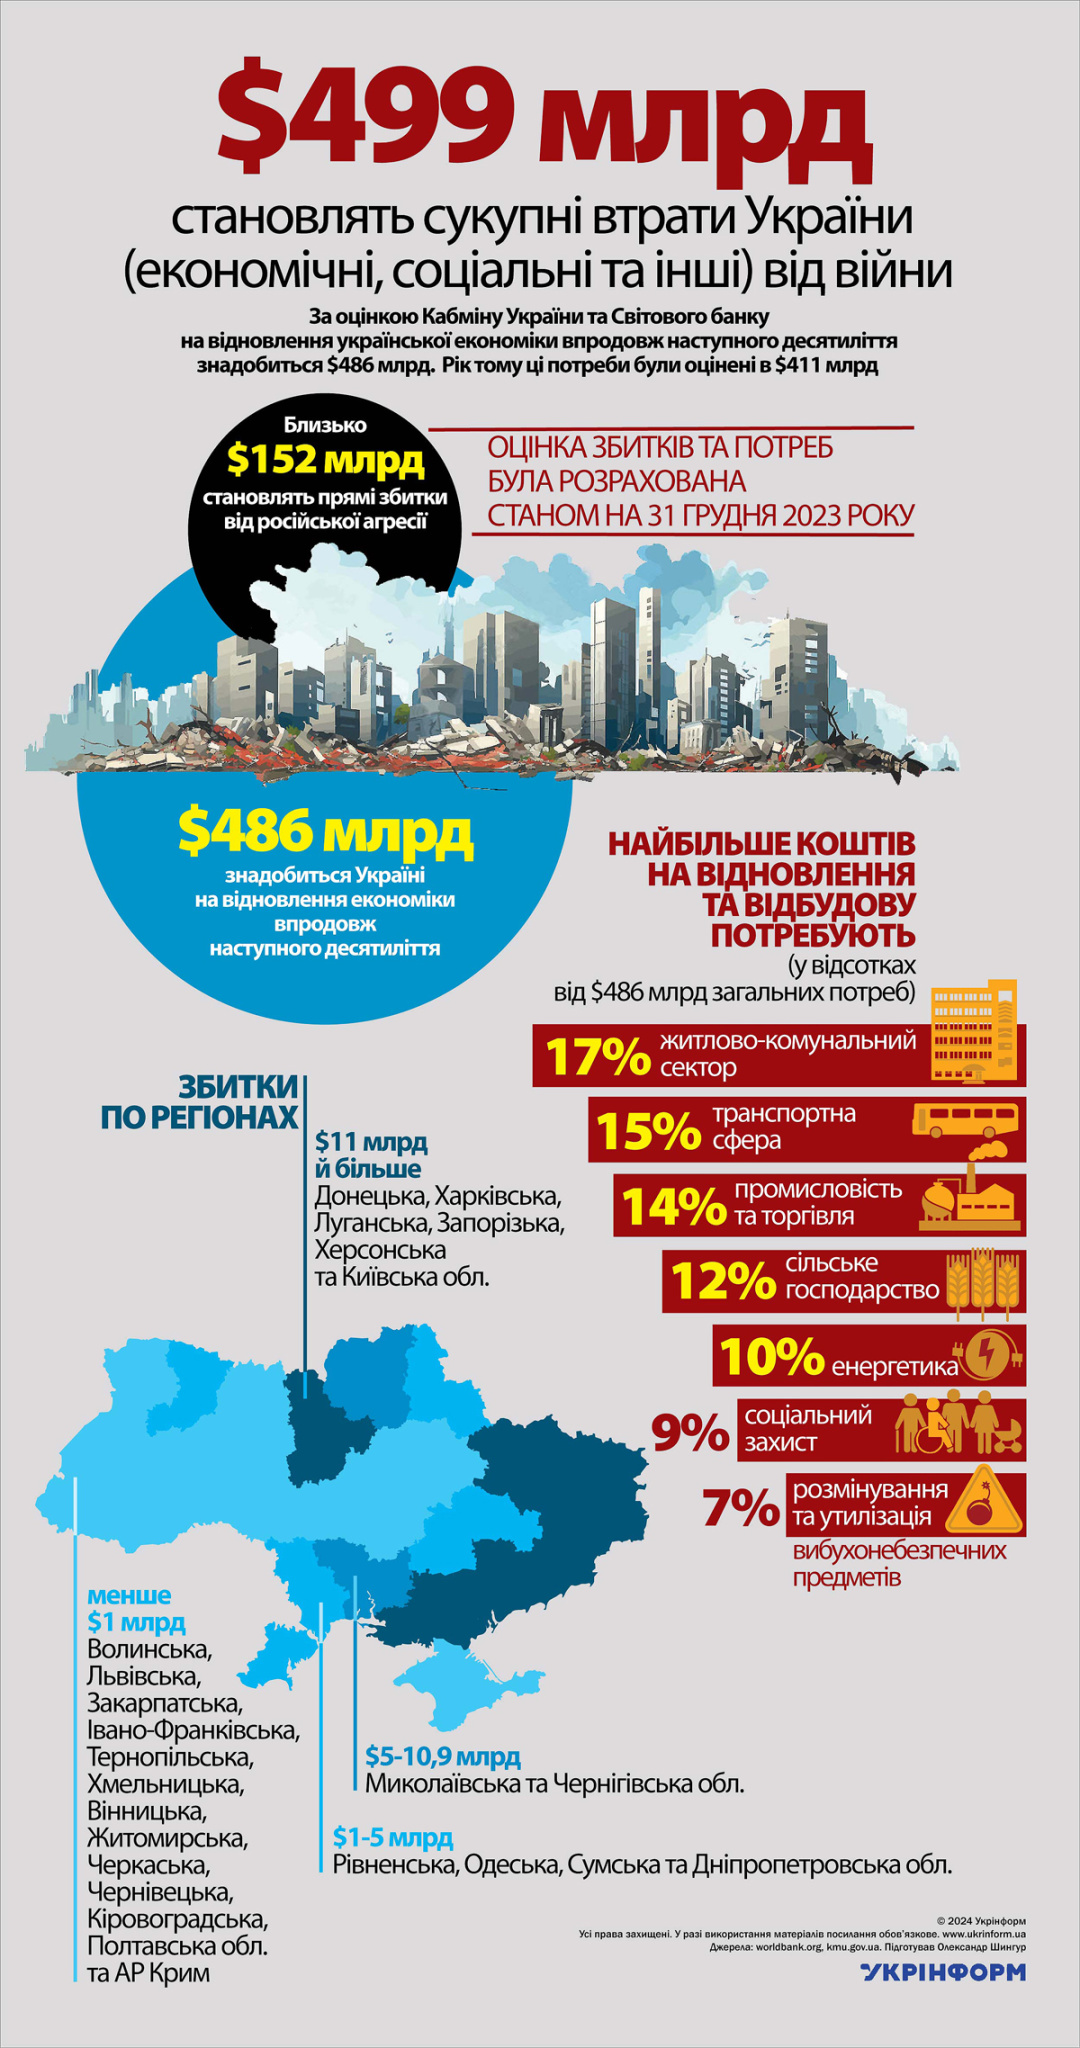 За інформацією Кабінету міністрів України та Світового банку